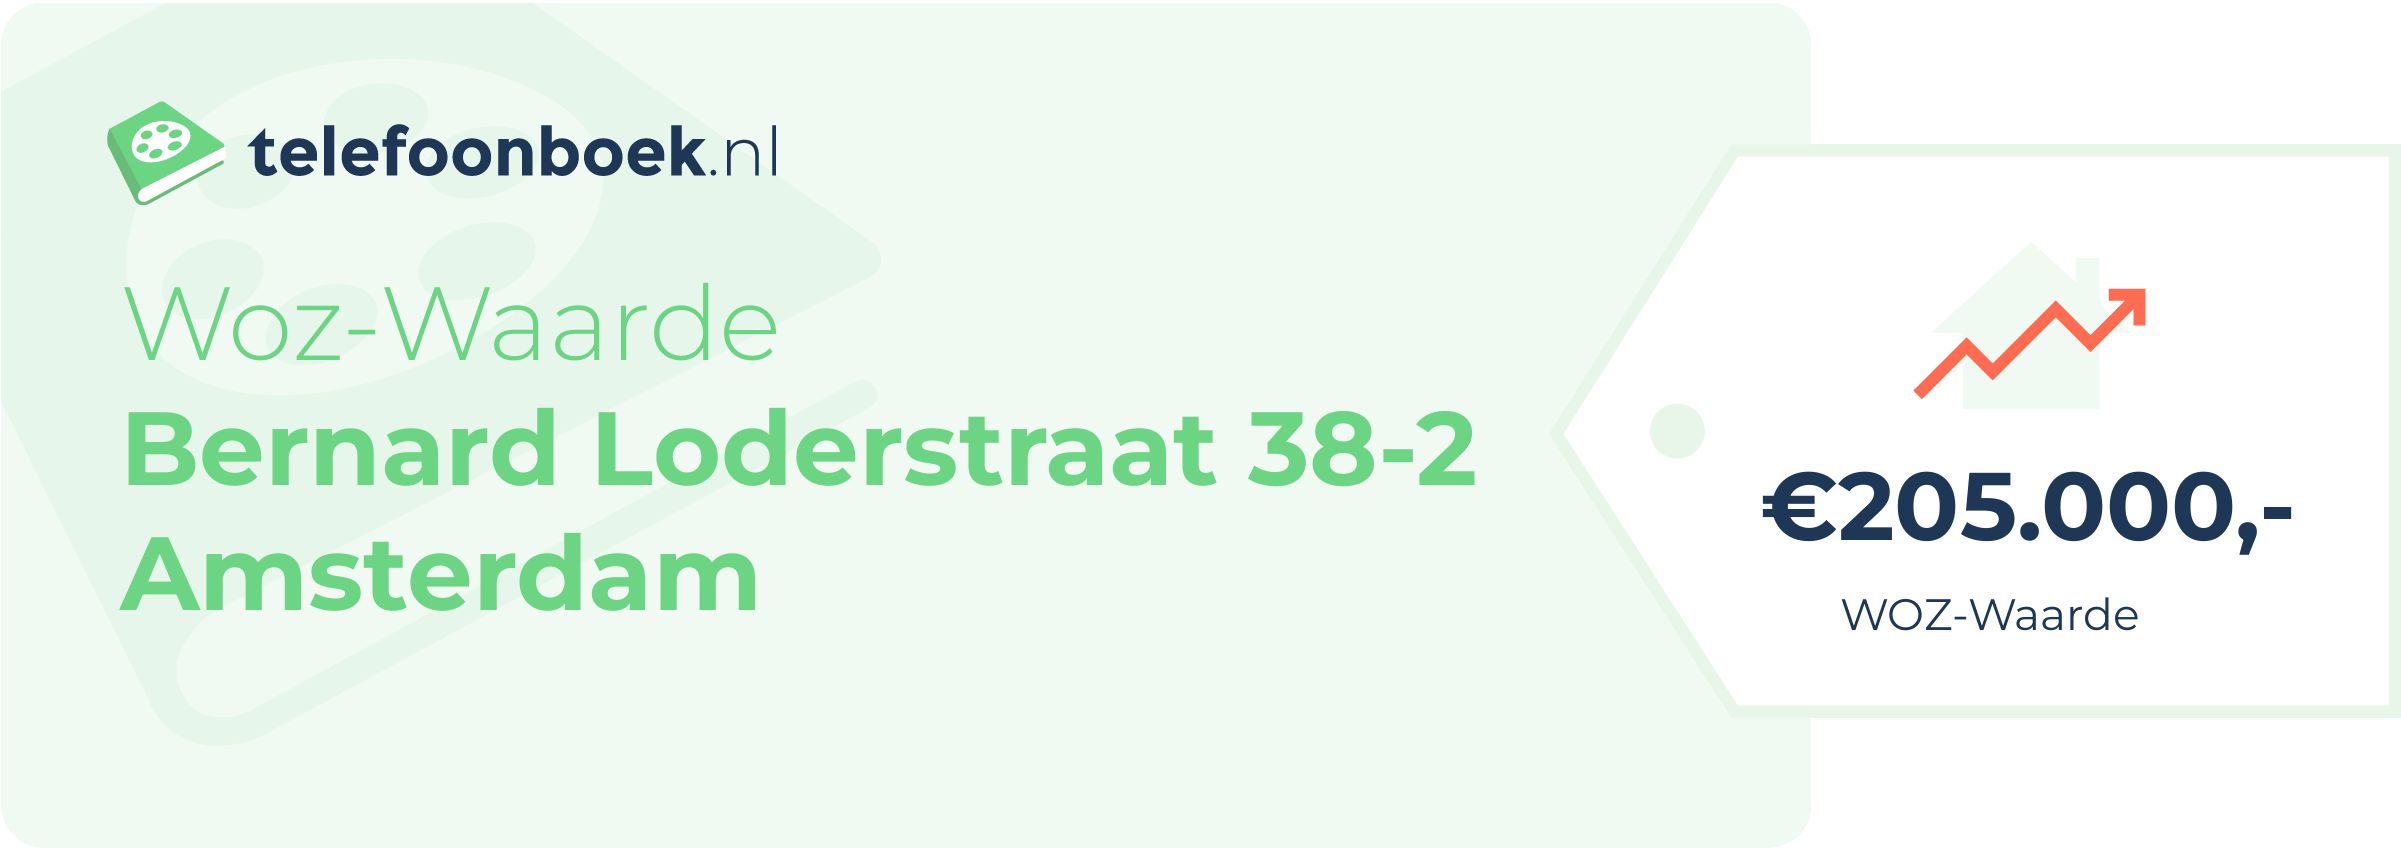 WOZ-waarde Bernard Loderstraat 38-2 Amsterdam